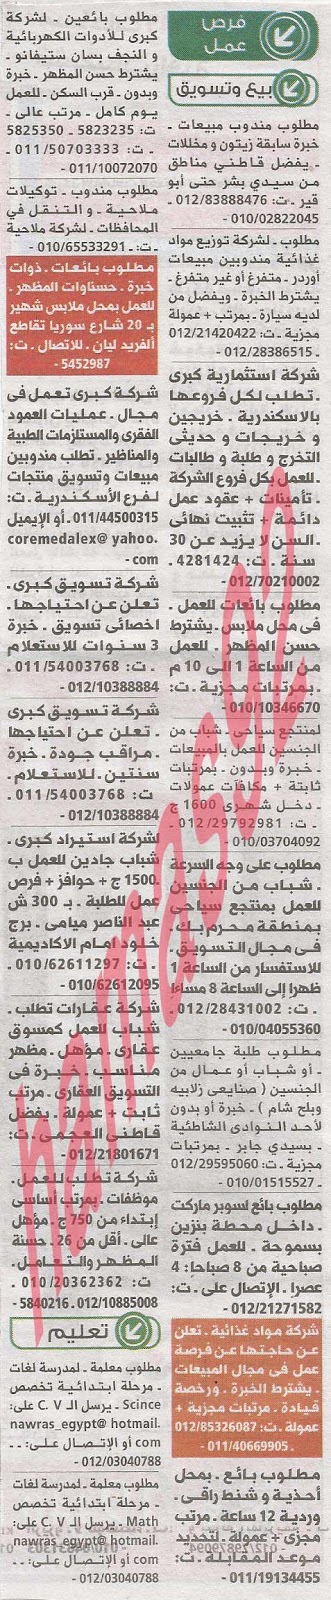 وظائف خالية من جريدة الوسيط الاسكندرية الثلاثاء 11-06-2013 %D9%88+%D8%B3+%D8%B3+3